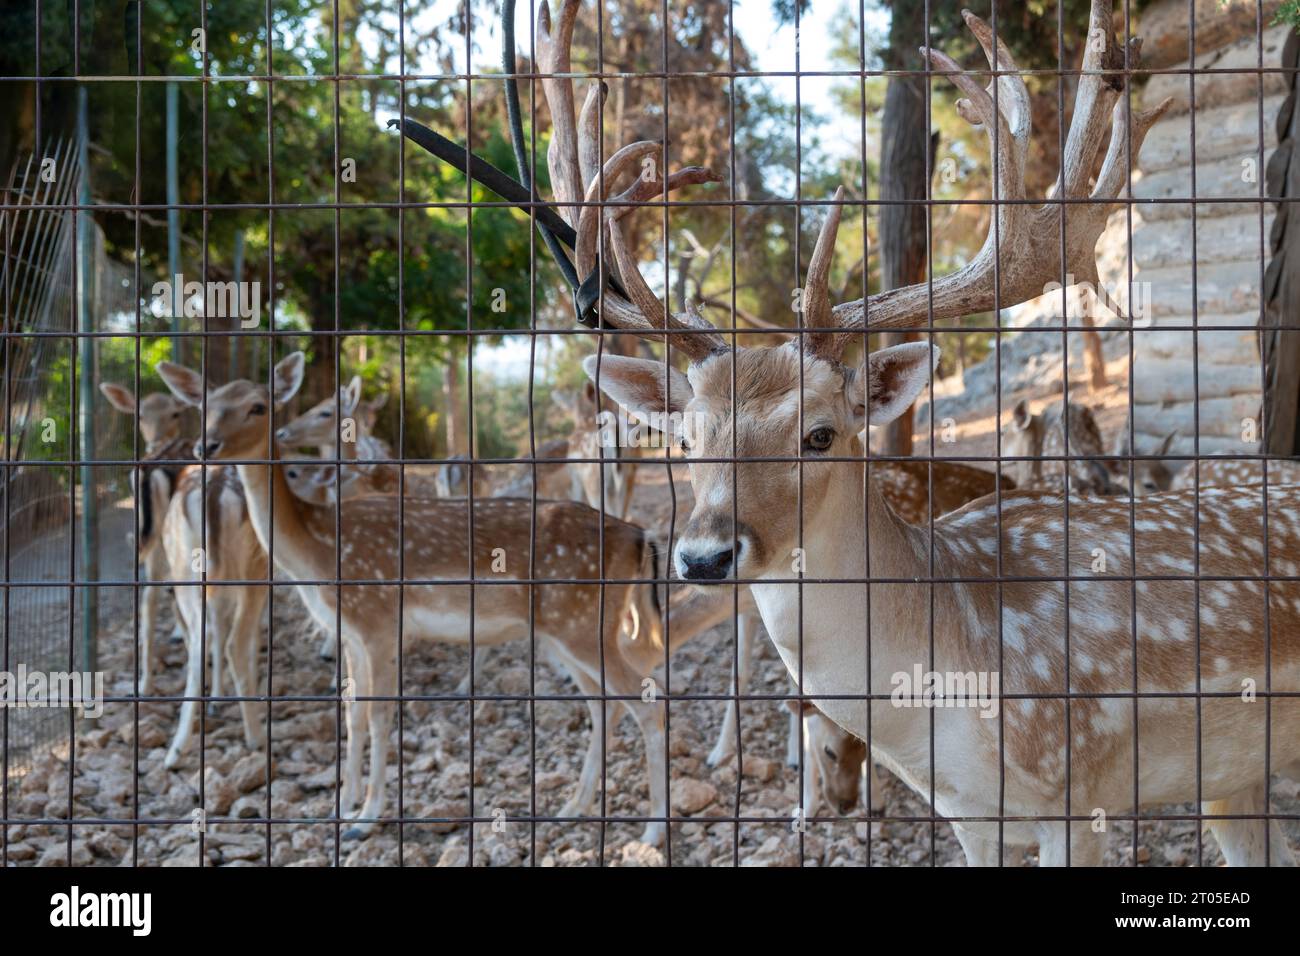 Cervo rosso abbronzato con macchia bianca, Cervus elaphus, dietro sfondo di gabbia metallica. Mammiferi selvatici nel loro habitat nativo greco, giorno di sole. Foto Stock